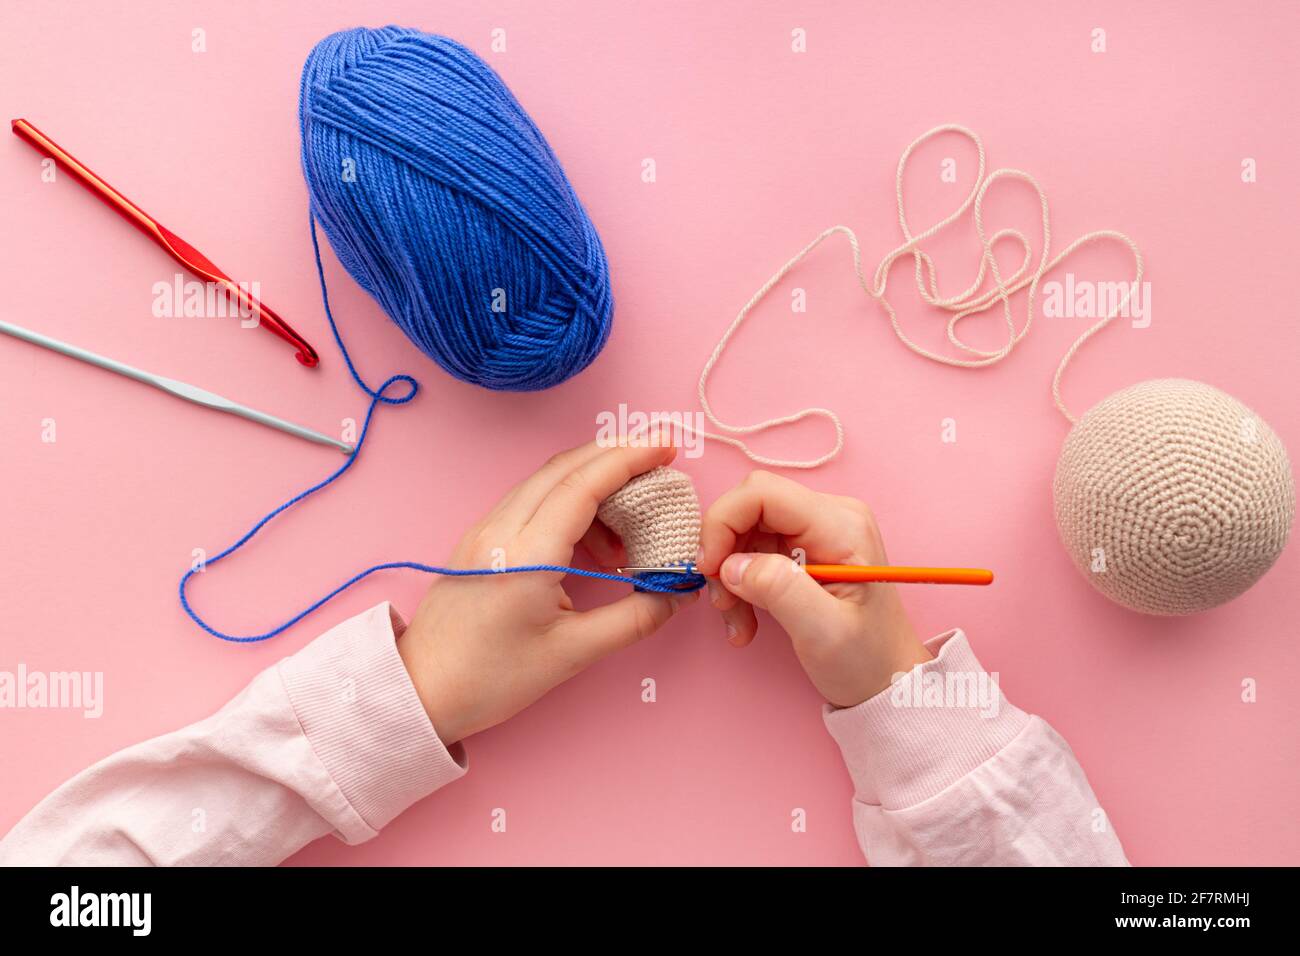 Les mains des enfants dans le processus de crochetage de jouets à partir de fils bleus et beiges. Banque D'Images